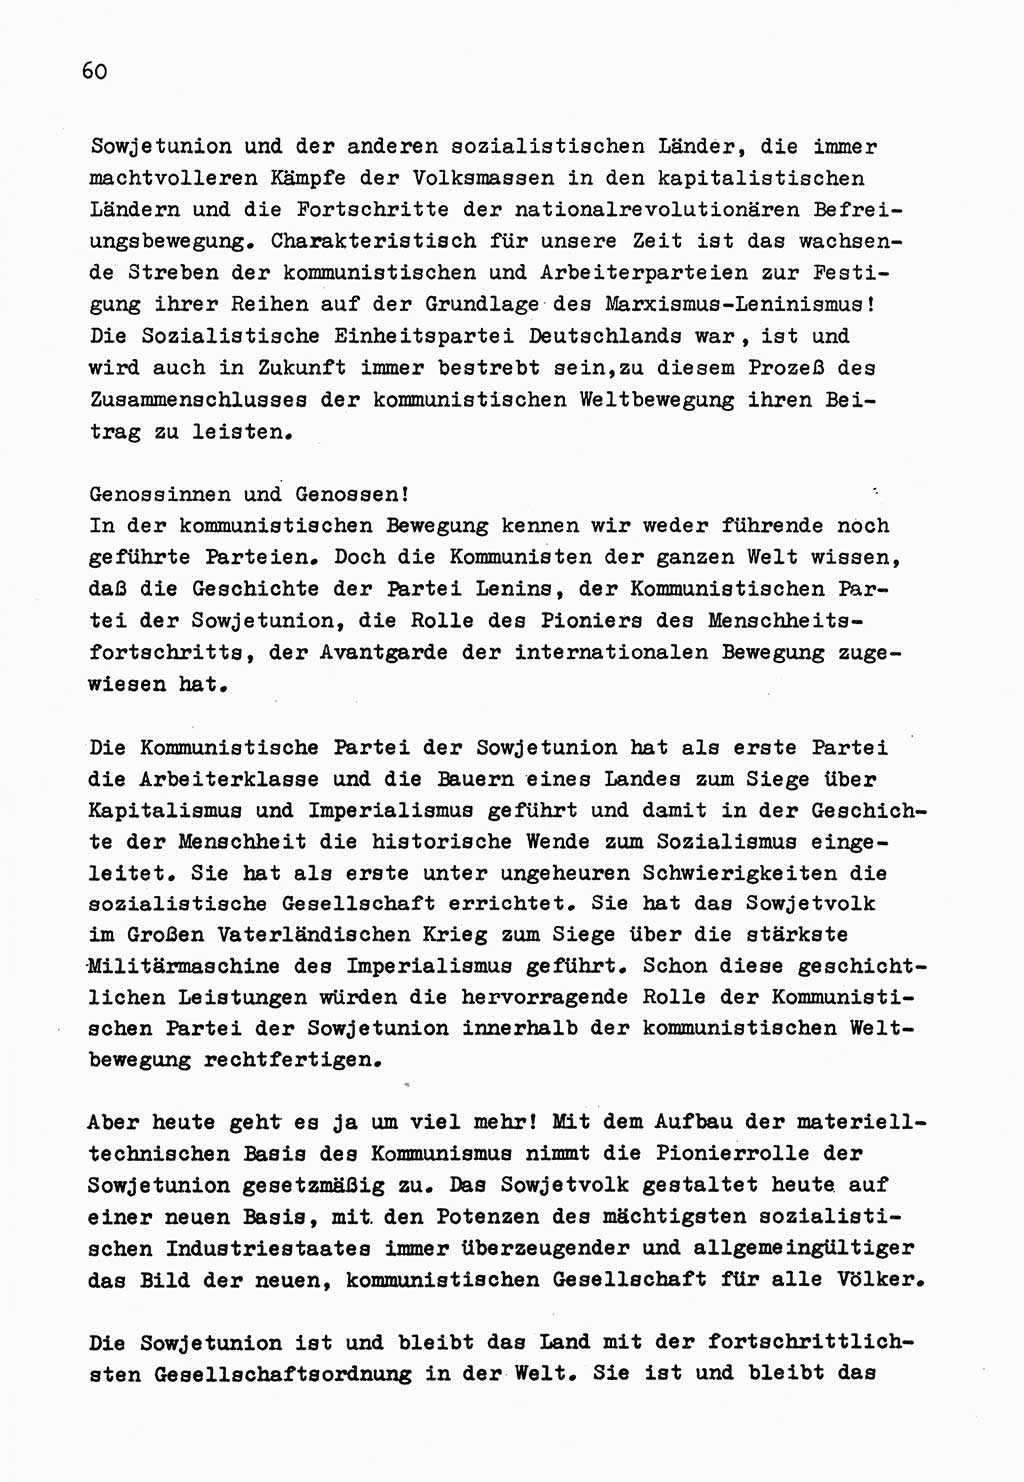 Zu Fragen der Parteiarbeit [Sozialistische Einheitspartei Deutschlands (SED) Deutsche Demokratische Republik (DDR)] 1979, Seite 60 (Fr. PA SED DDR 1979, S. 60)